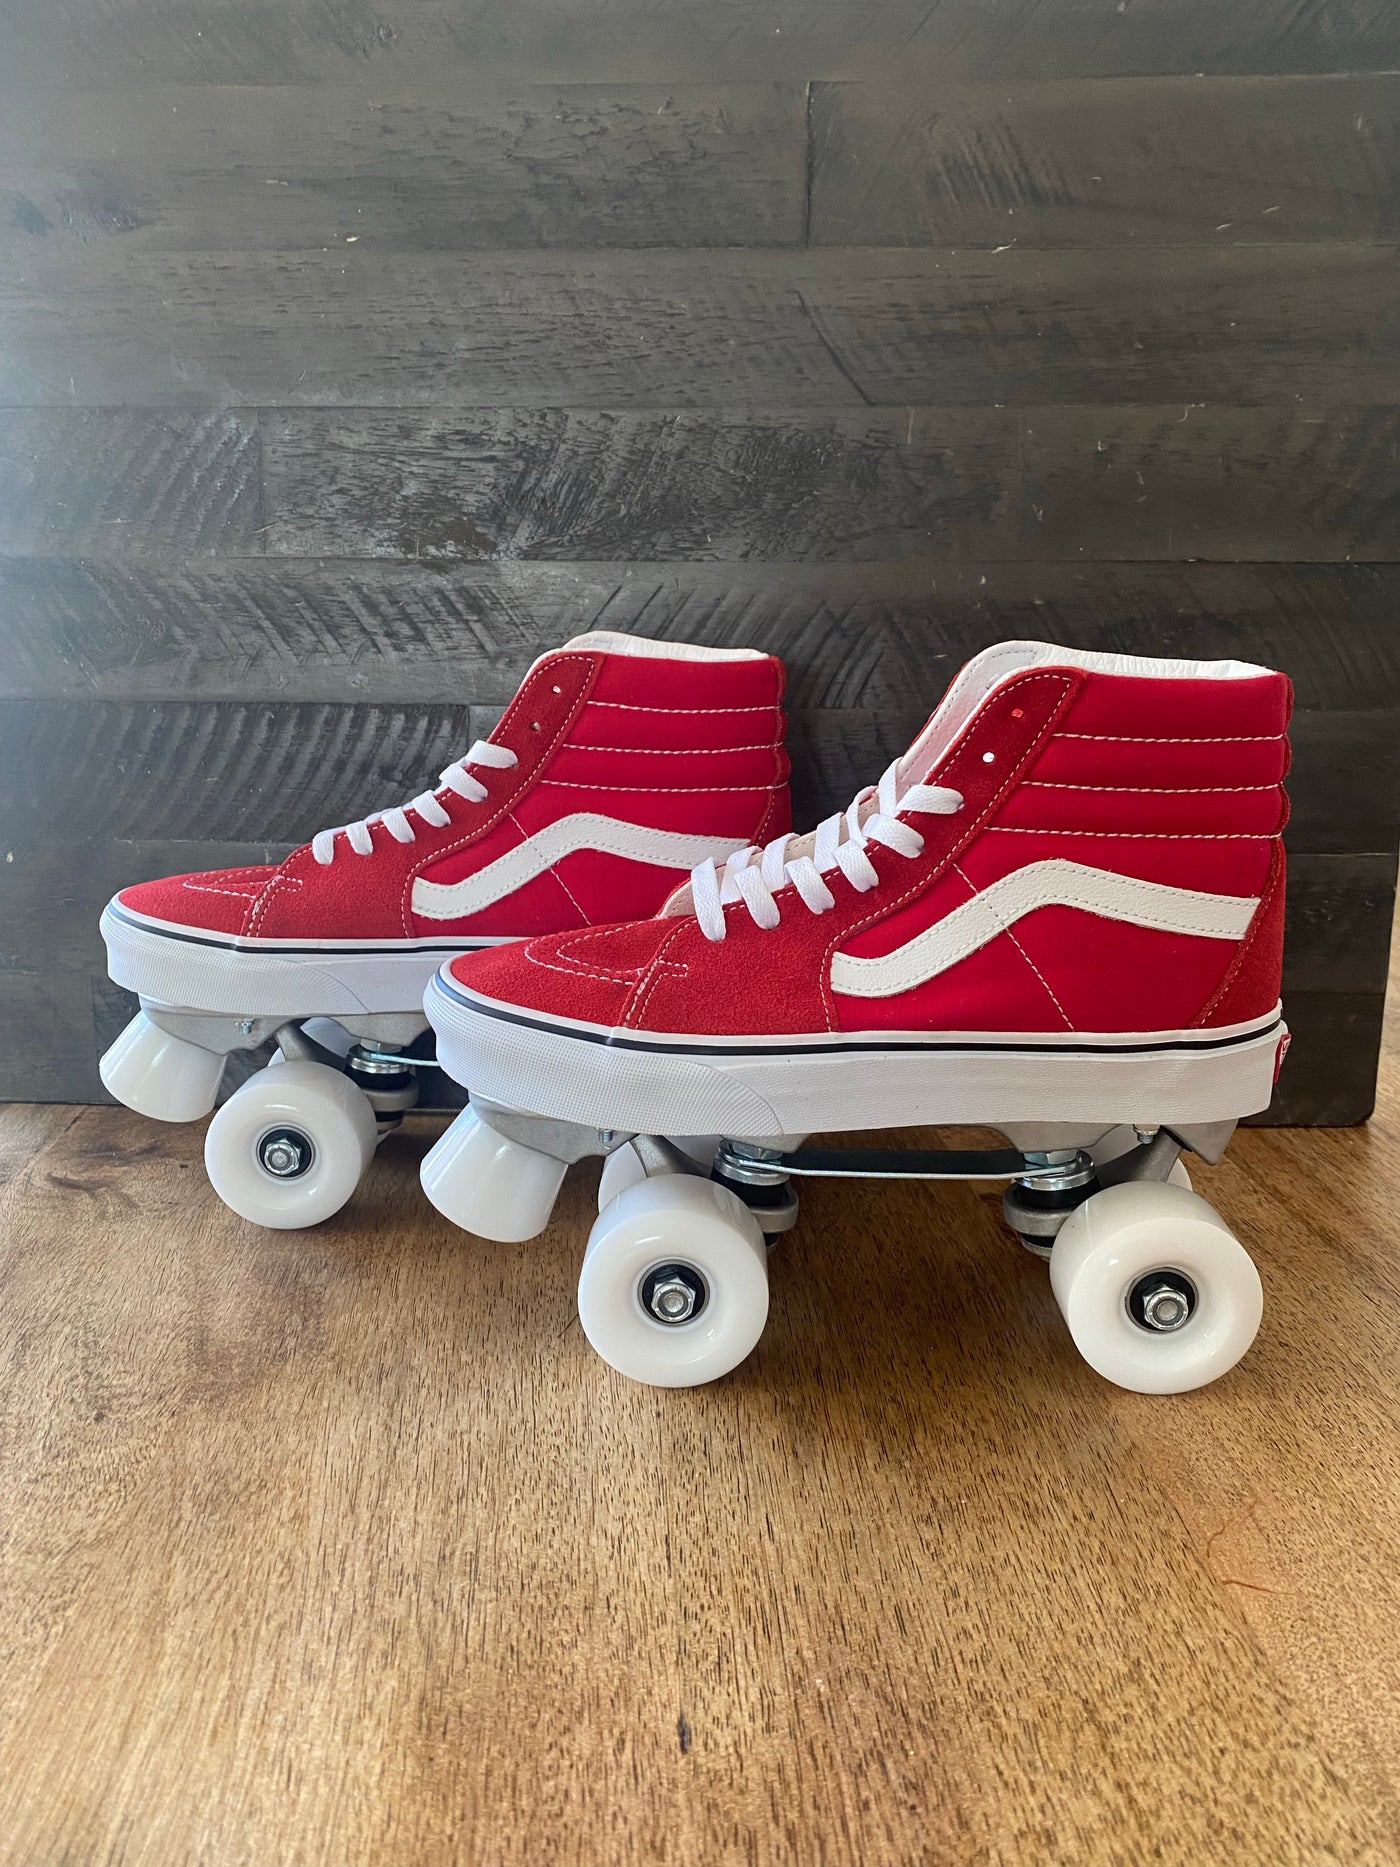 Red Custom Skates - Kids All Sizes